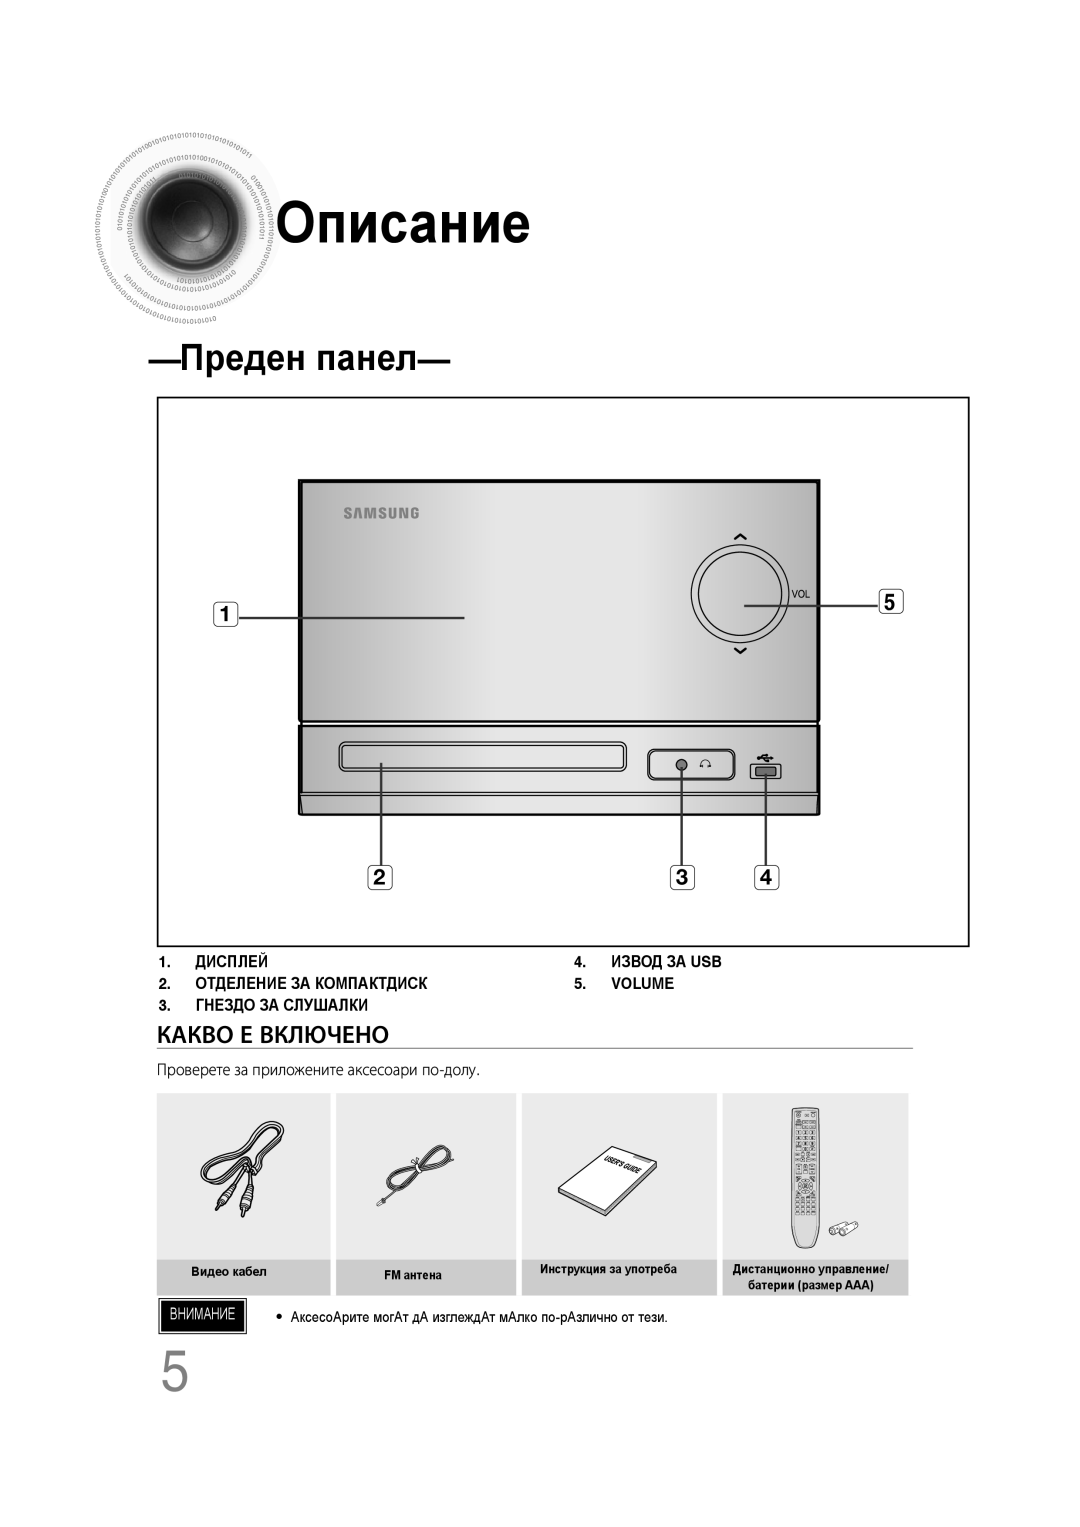 Samsung MM-C330D/EDC Описание, Преден панел, Какво Е Включено, Дисплей, Извод За Usb, Отделение За Компактдиск, Volume 